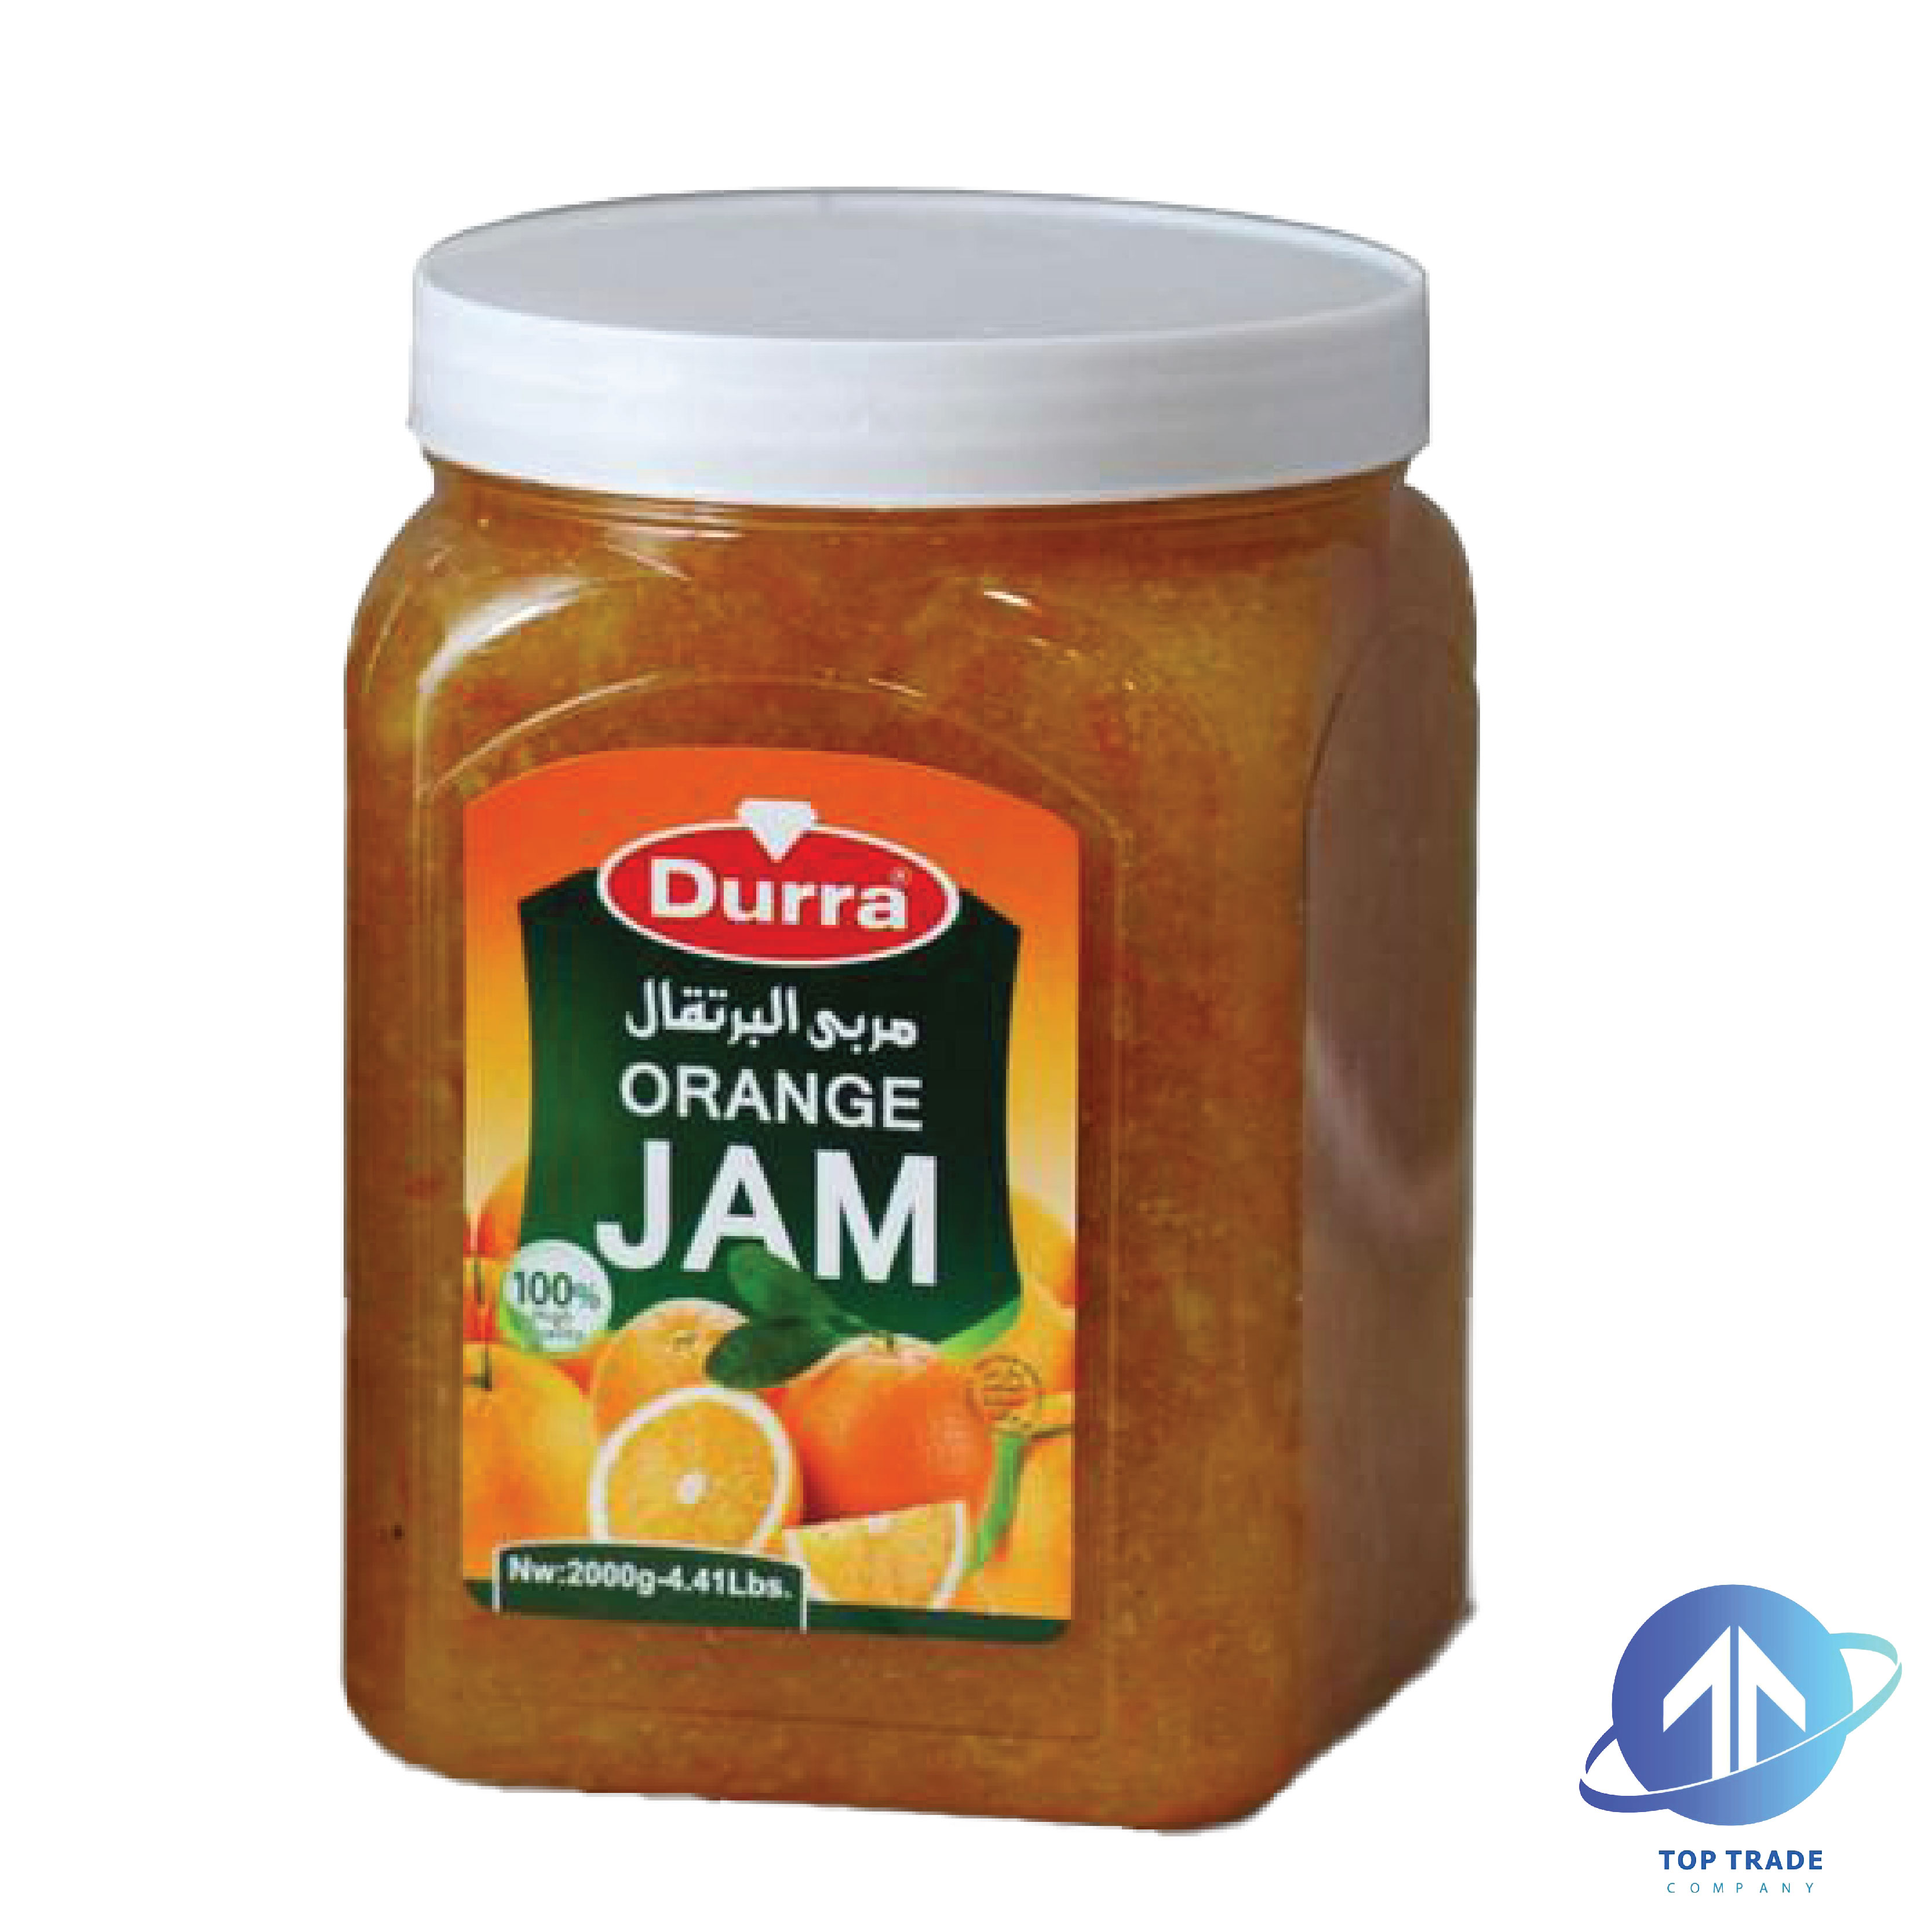 Durra Orange Jam 2kg 